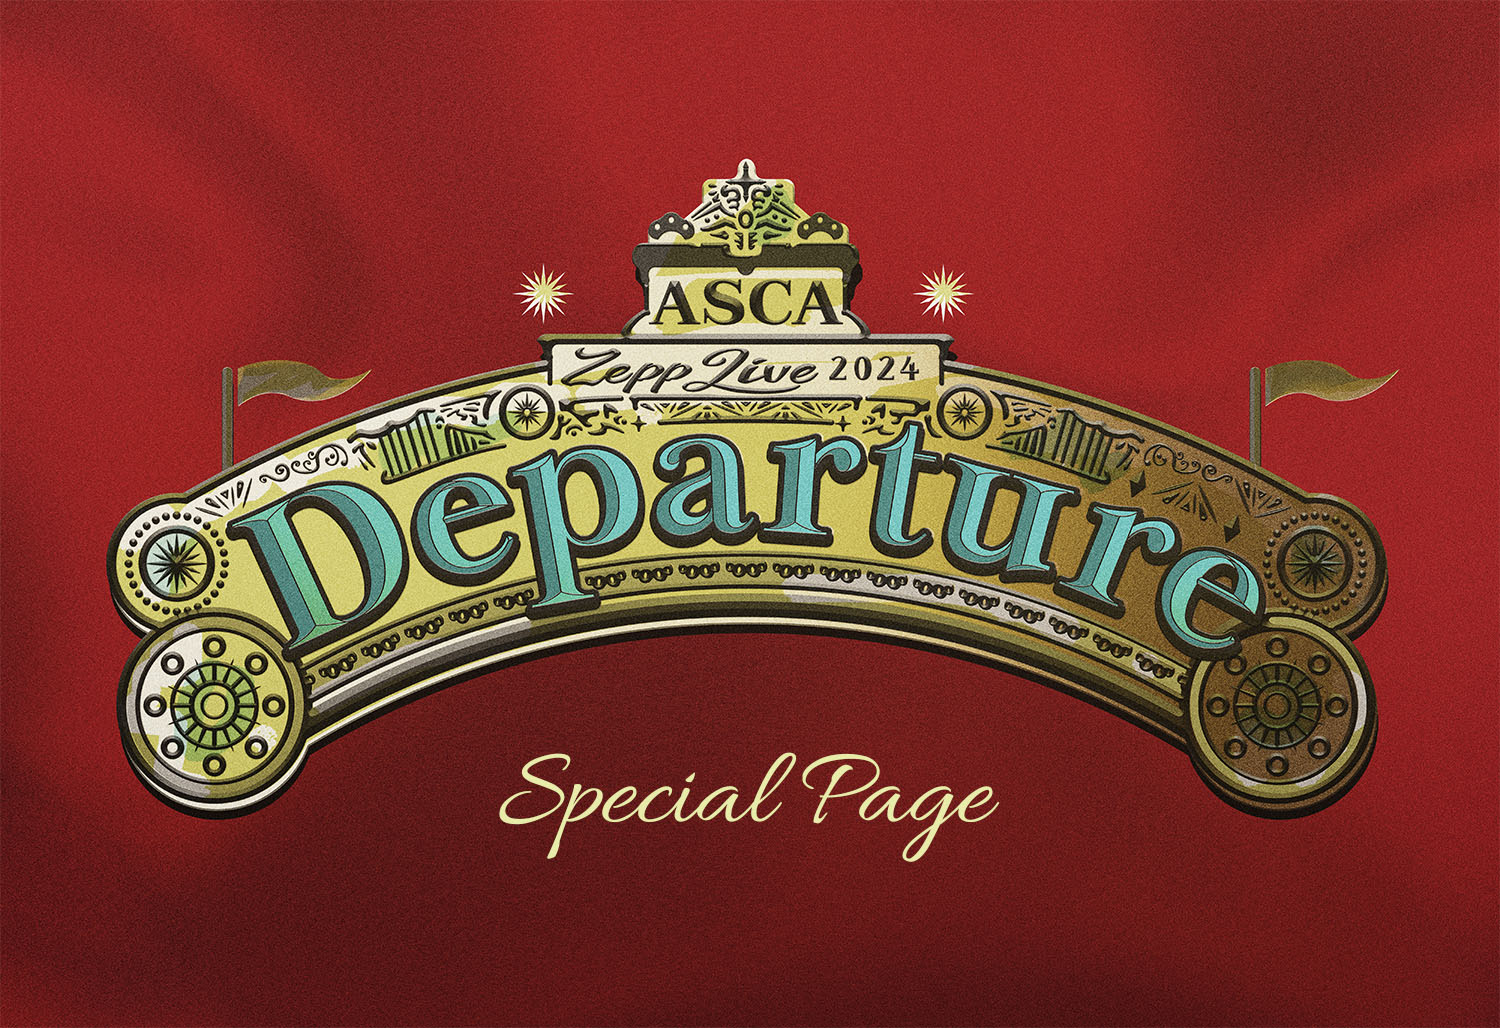 ASCA Zepp LIVE 2024 -Departure- 特設ページ | ASCA Music Entertainment